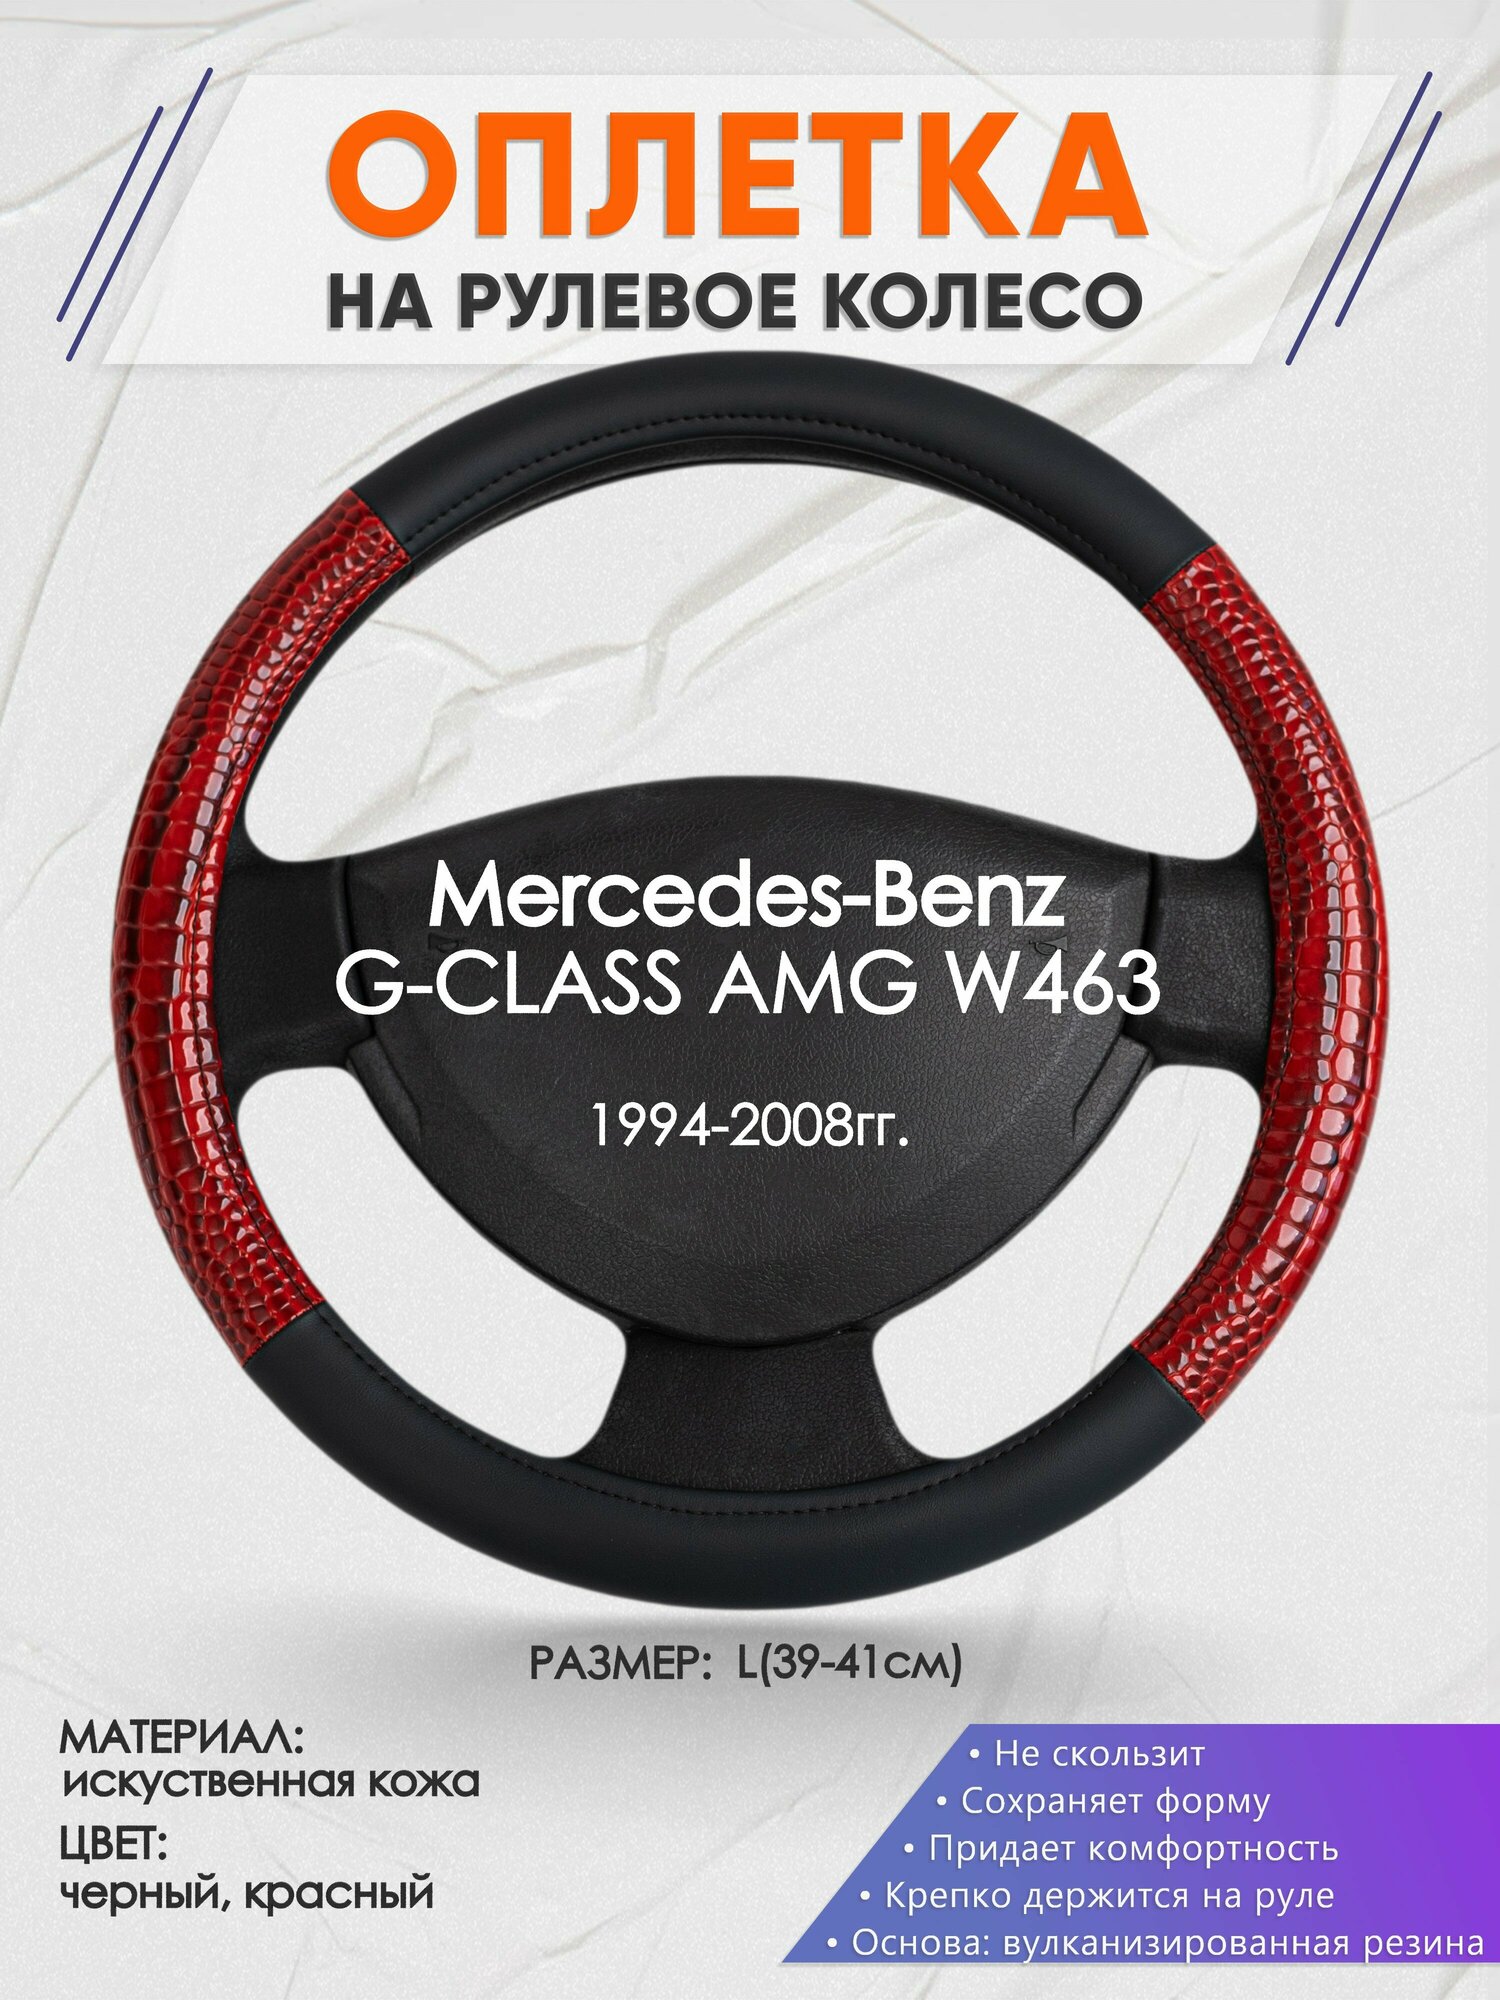 Оплетка на руль для Mercedes-Benz G-CLASS AMG W463(Мерседес Бенц Г Класс) 1994-2008, L(39-41см), Искусственная кожа 16